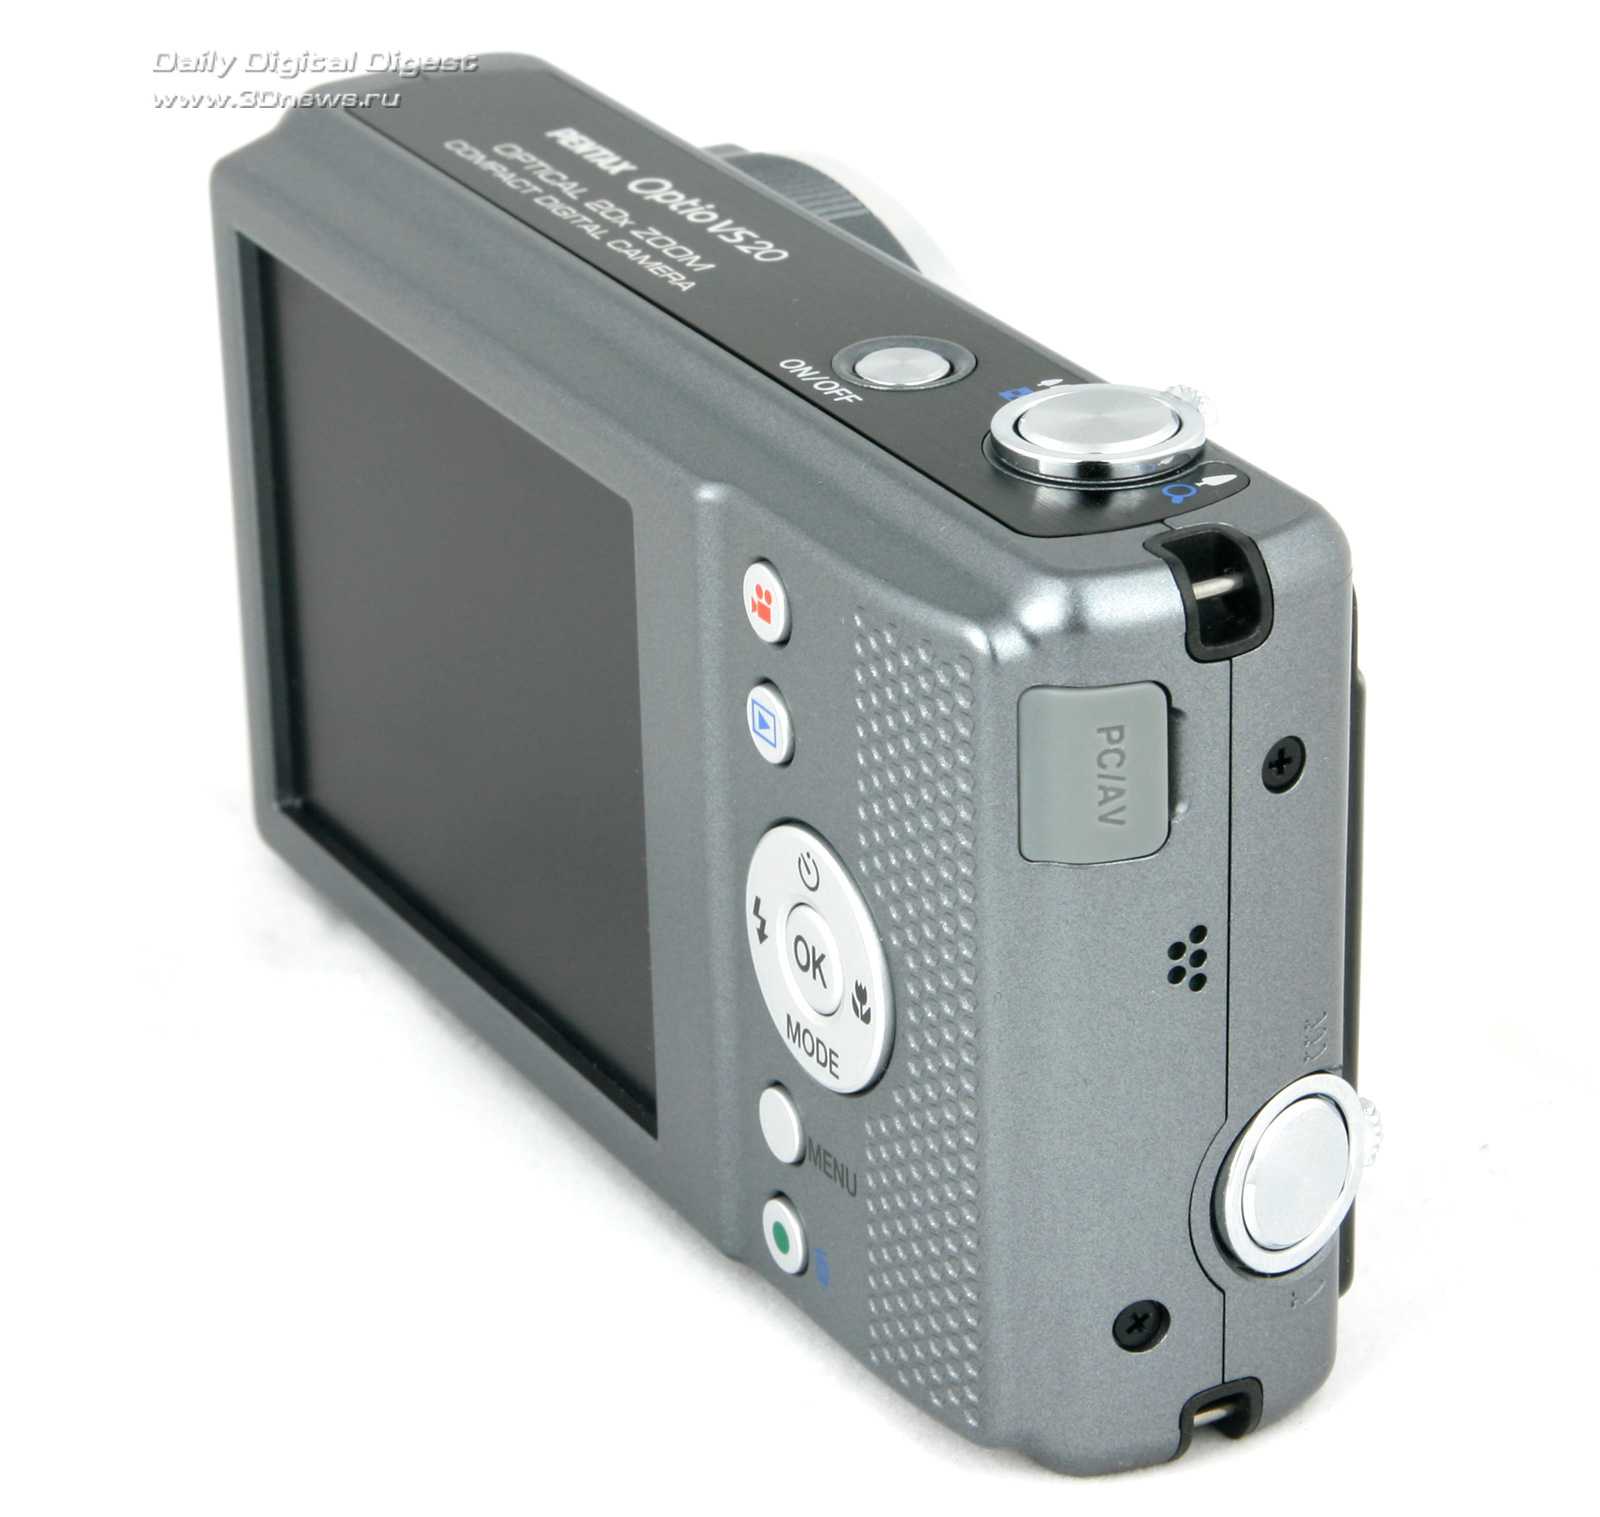 Цифровой фотоаппарат Pentax Optio VS20 - подробные характеристики обзоры видео фото Цены в интернет-магазинах где можно купить цифровую фотоаппарат Pentax Optio VS20